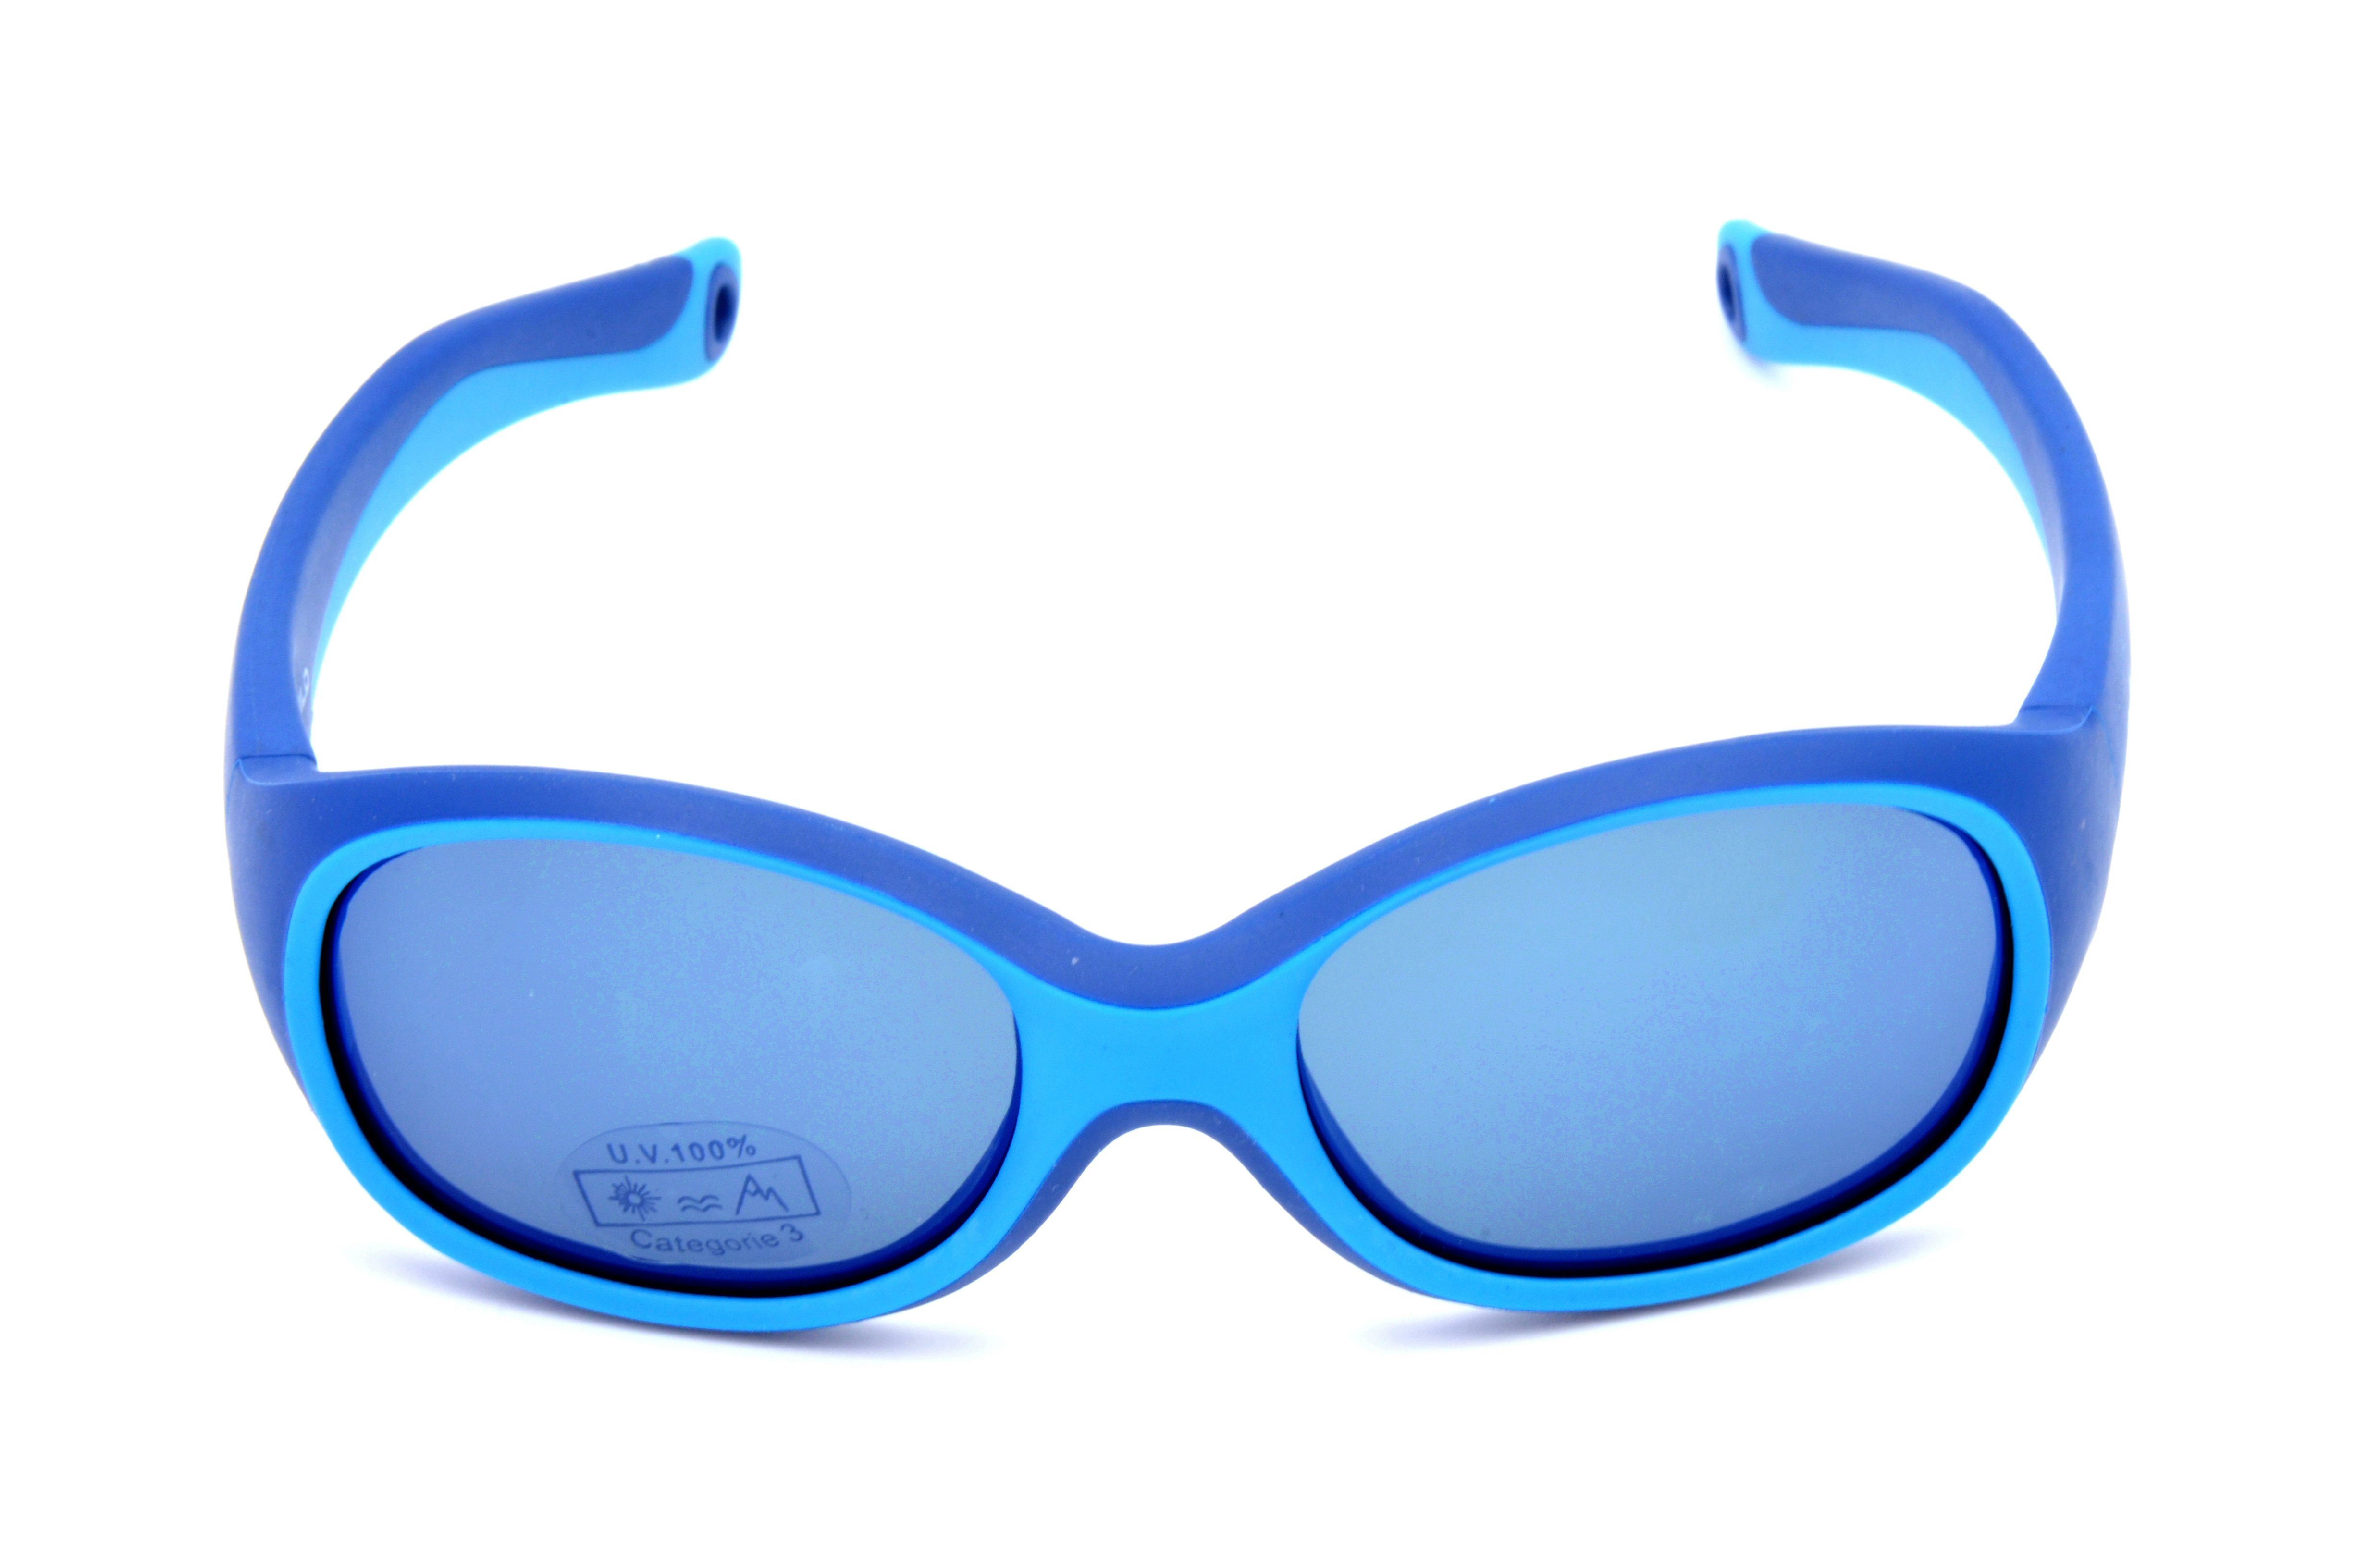 Gamswild Sonnenbrille WK5121 GAMSKIDS Kinderbrille Unisex, Jahre kids Kleinkindbrille Mädchen rosa Jungen 3-6 grün, blau